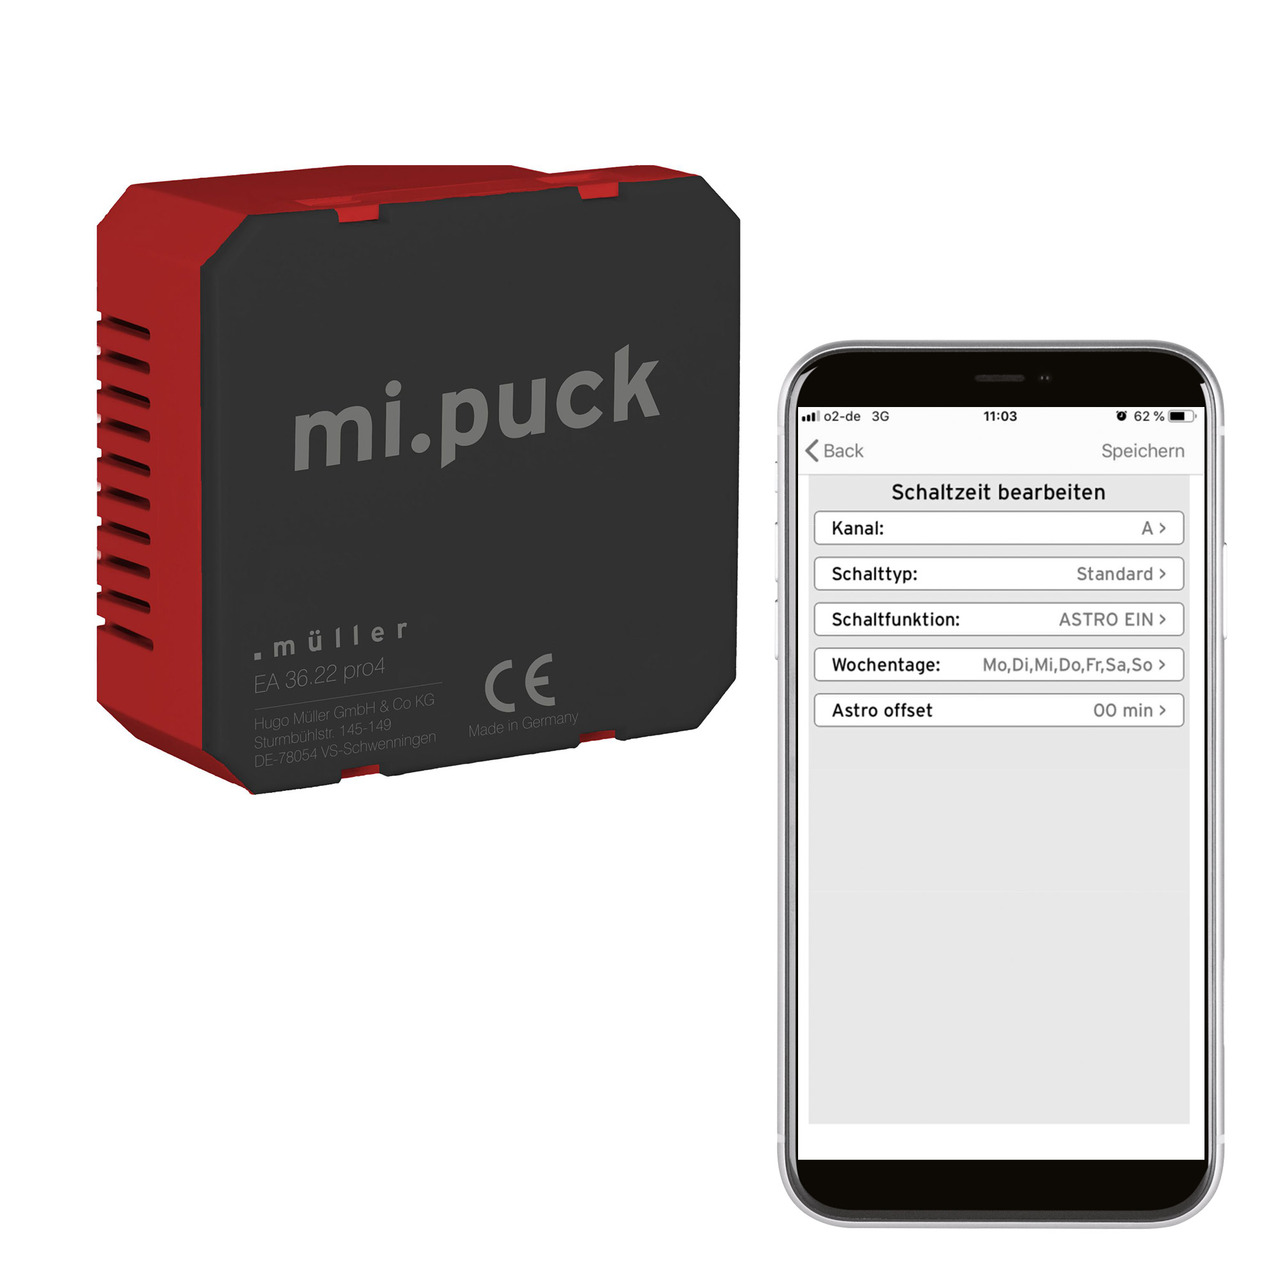 Hugo Müller digitale Wochenuhr EA 36-22 pro4- Rollladensteuerung oder Zeitschaltuhr- Bluetooth unter Haustechnik